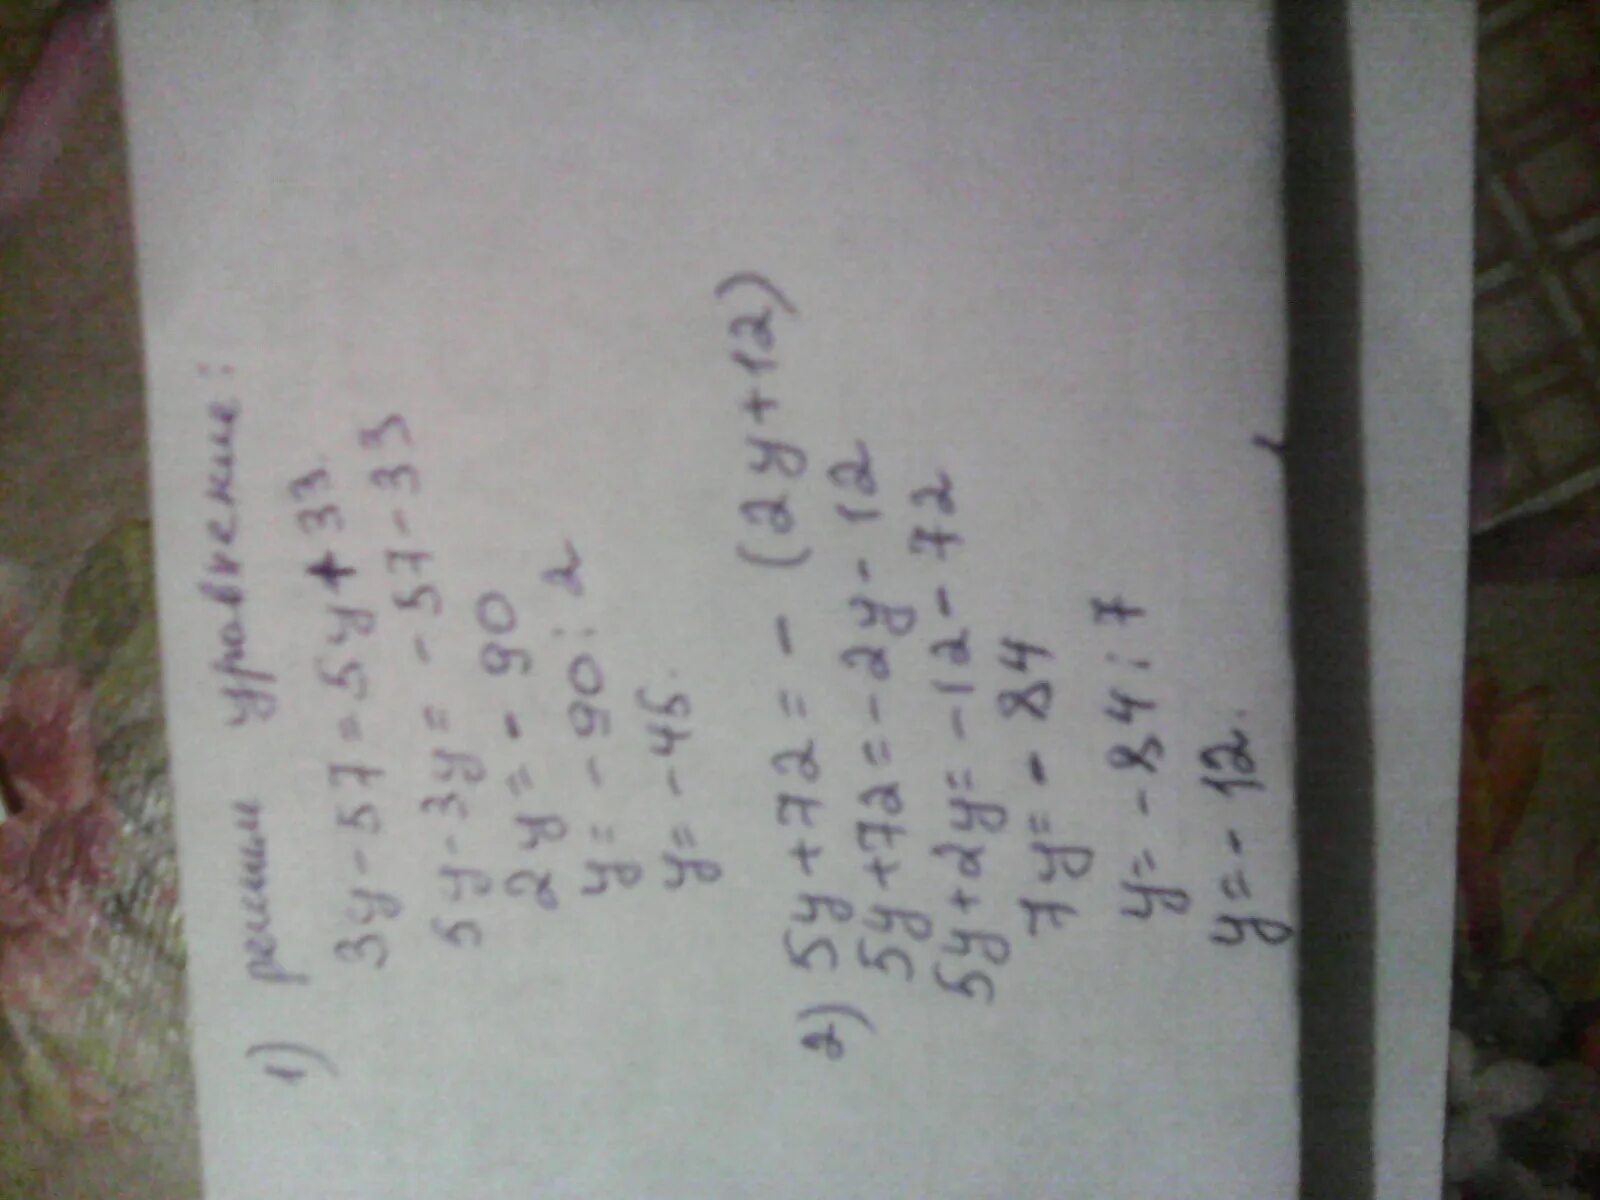 3 y 57. Значение выражения 6ху+5zw при некоторых значениях переменных равно 6. Значение выражение 14xy-8zw+5 при некоторых значениях.